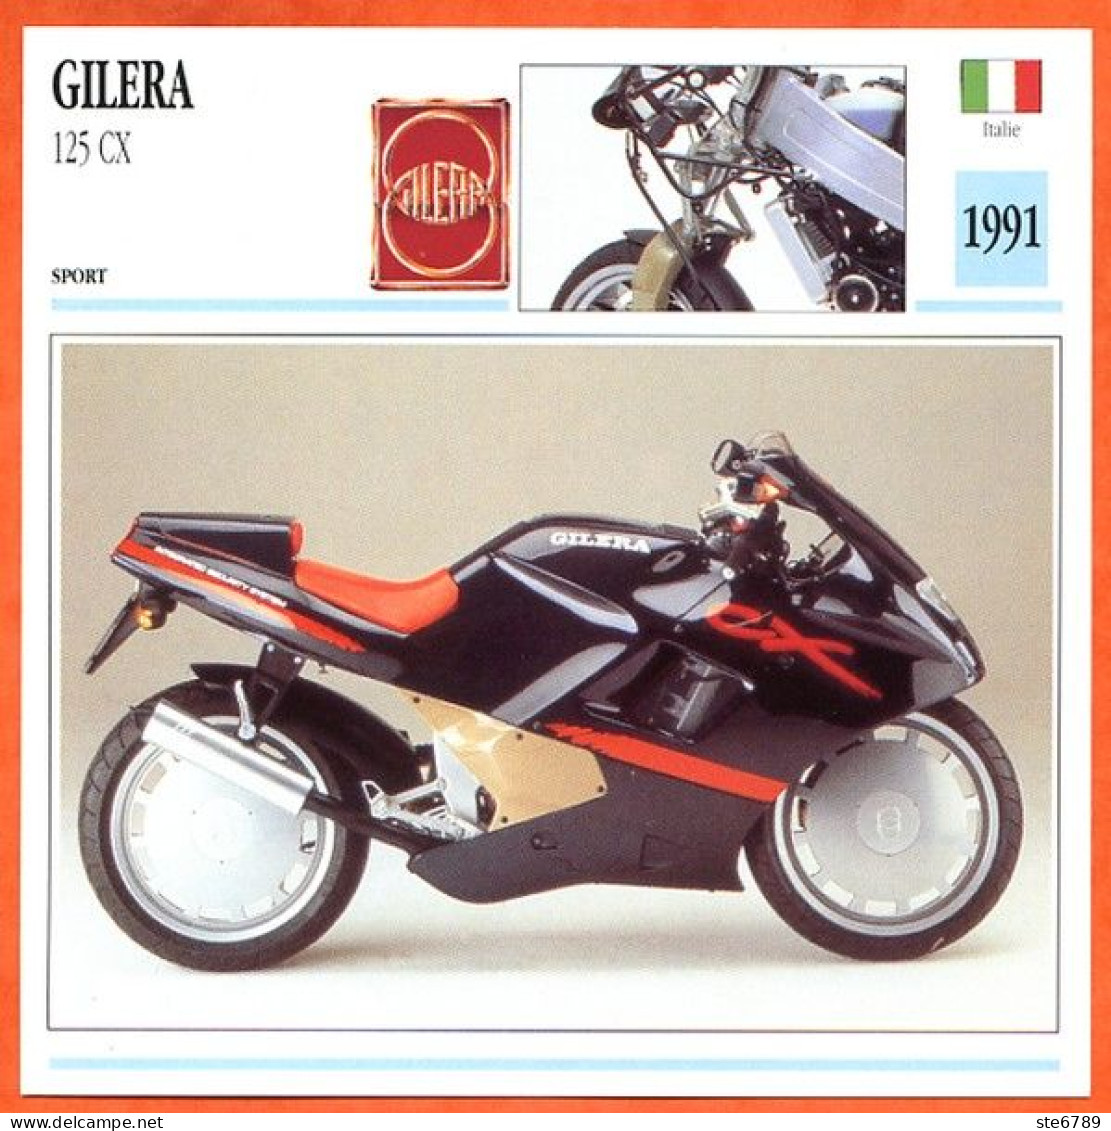 GILERA 125 CX 1991 Italie Fiche Technique Moto - Sports